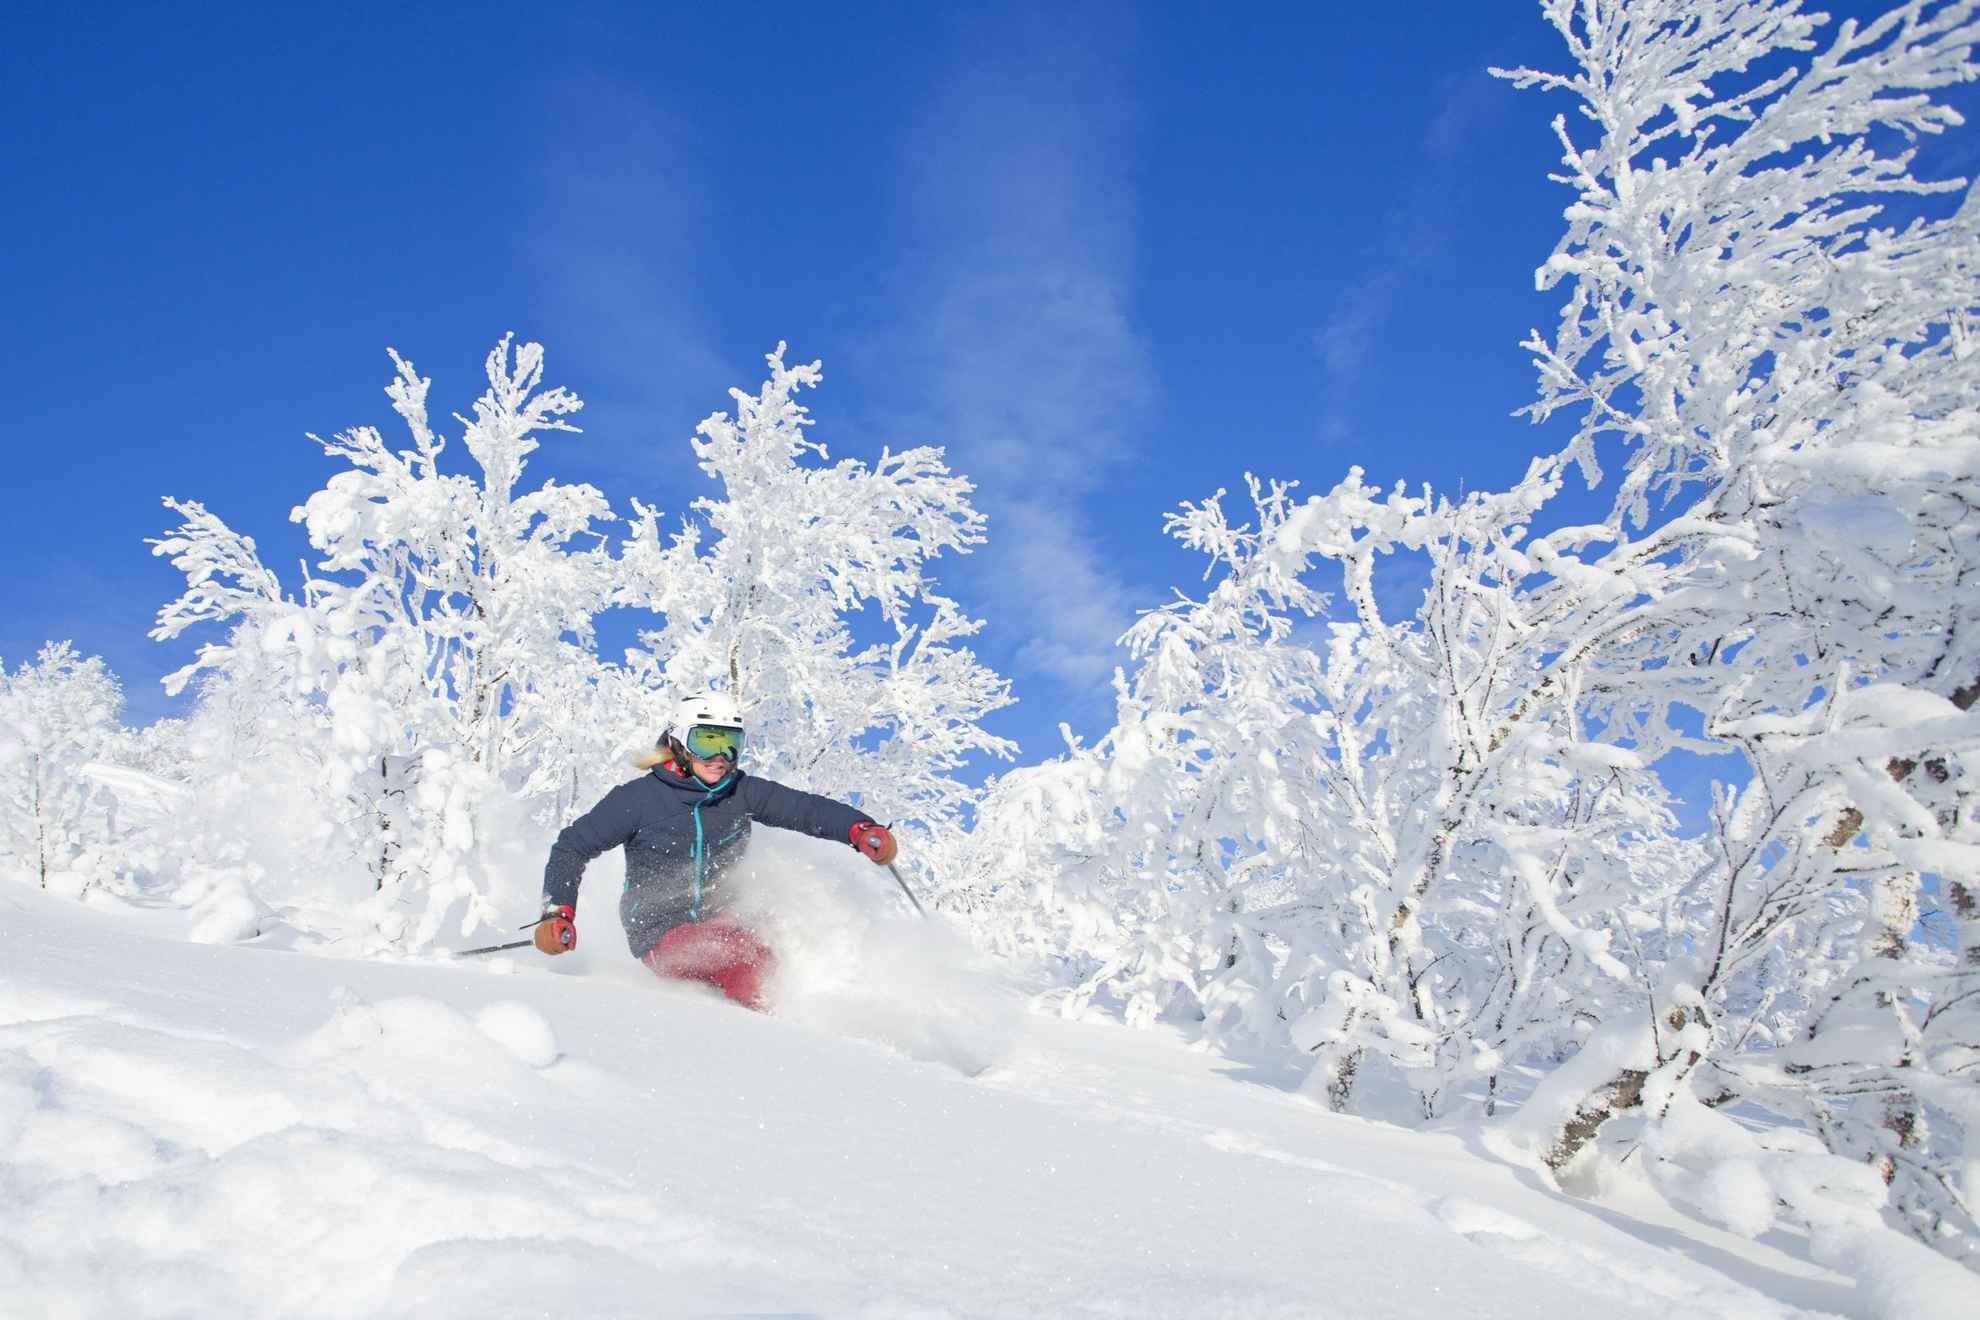 Een vrouw skiet off-piste. De grond en de bomen zijn bedekt met sneeuw en de lucht is blauw.